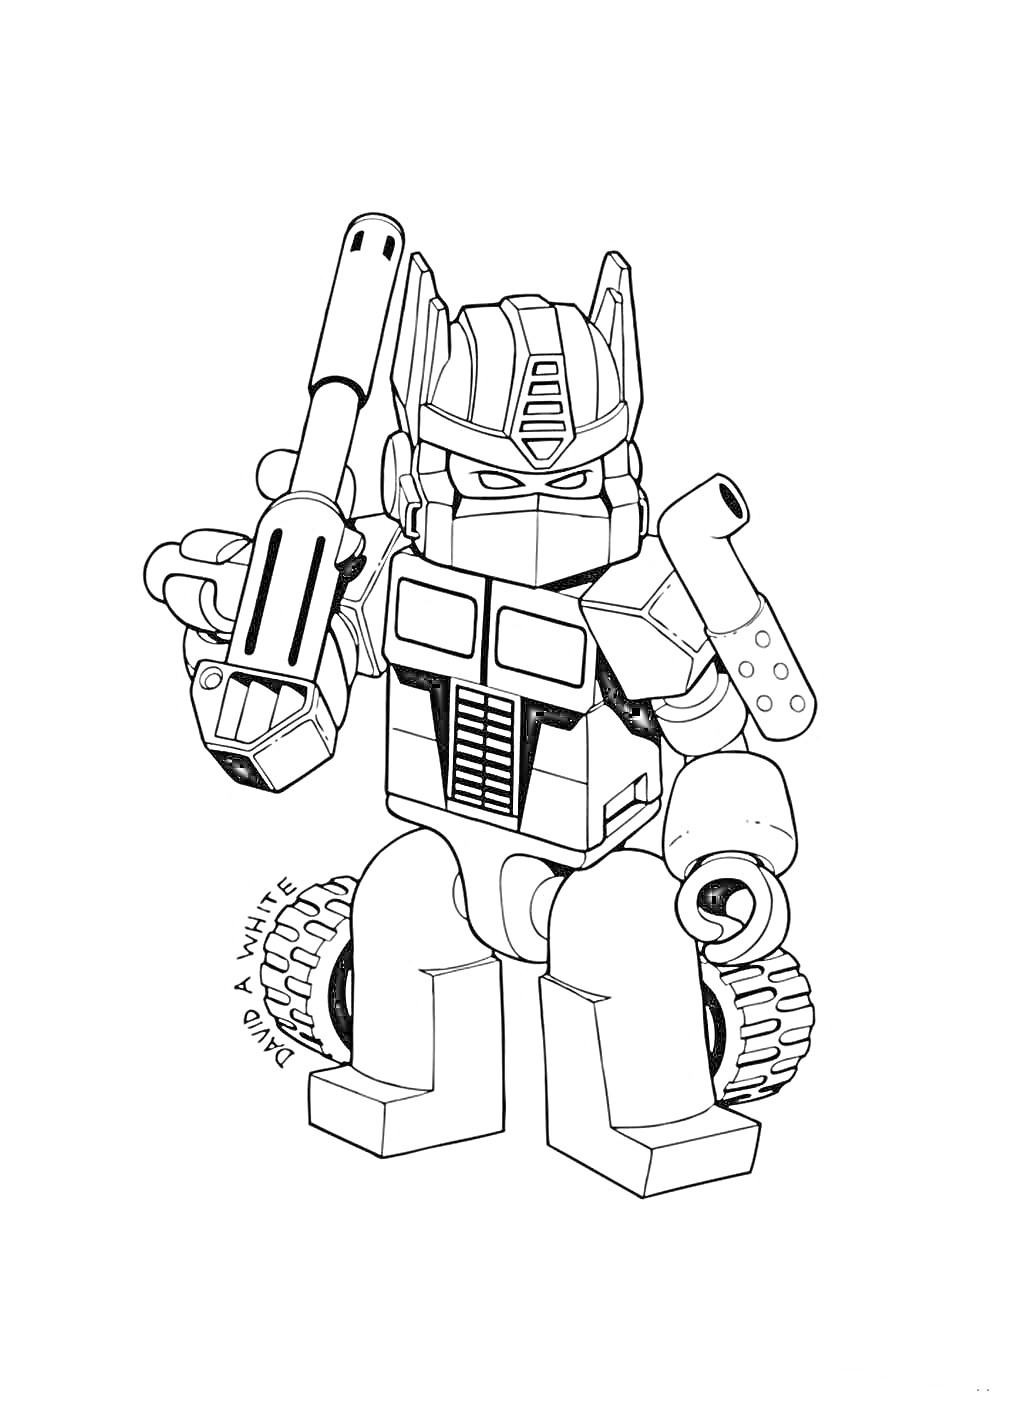 Робот-игрушка с пушкой в руках и колесами на плечах